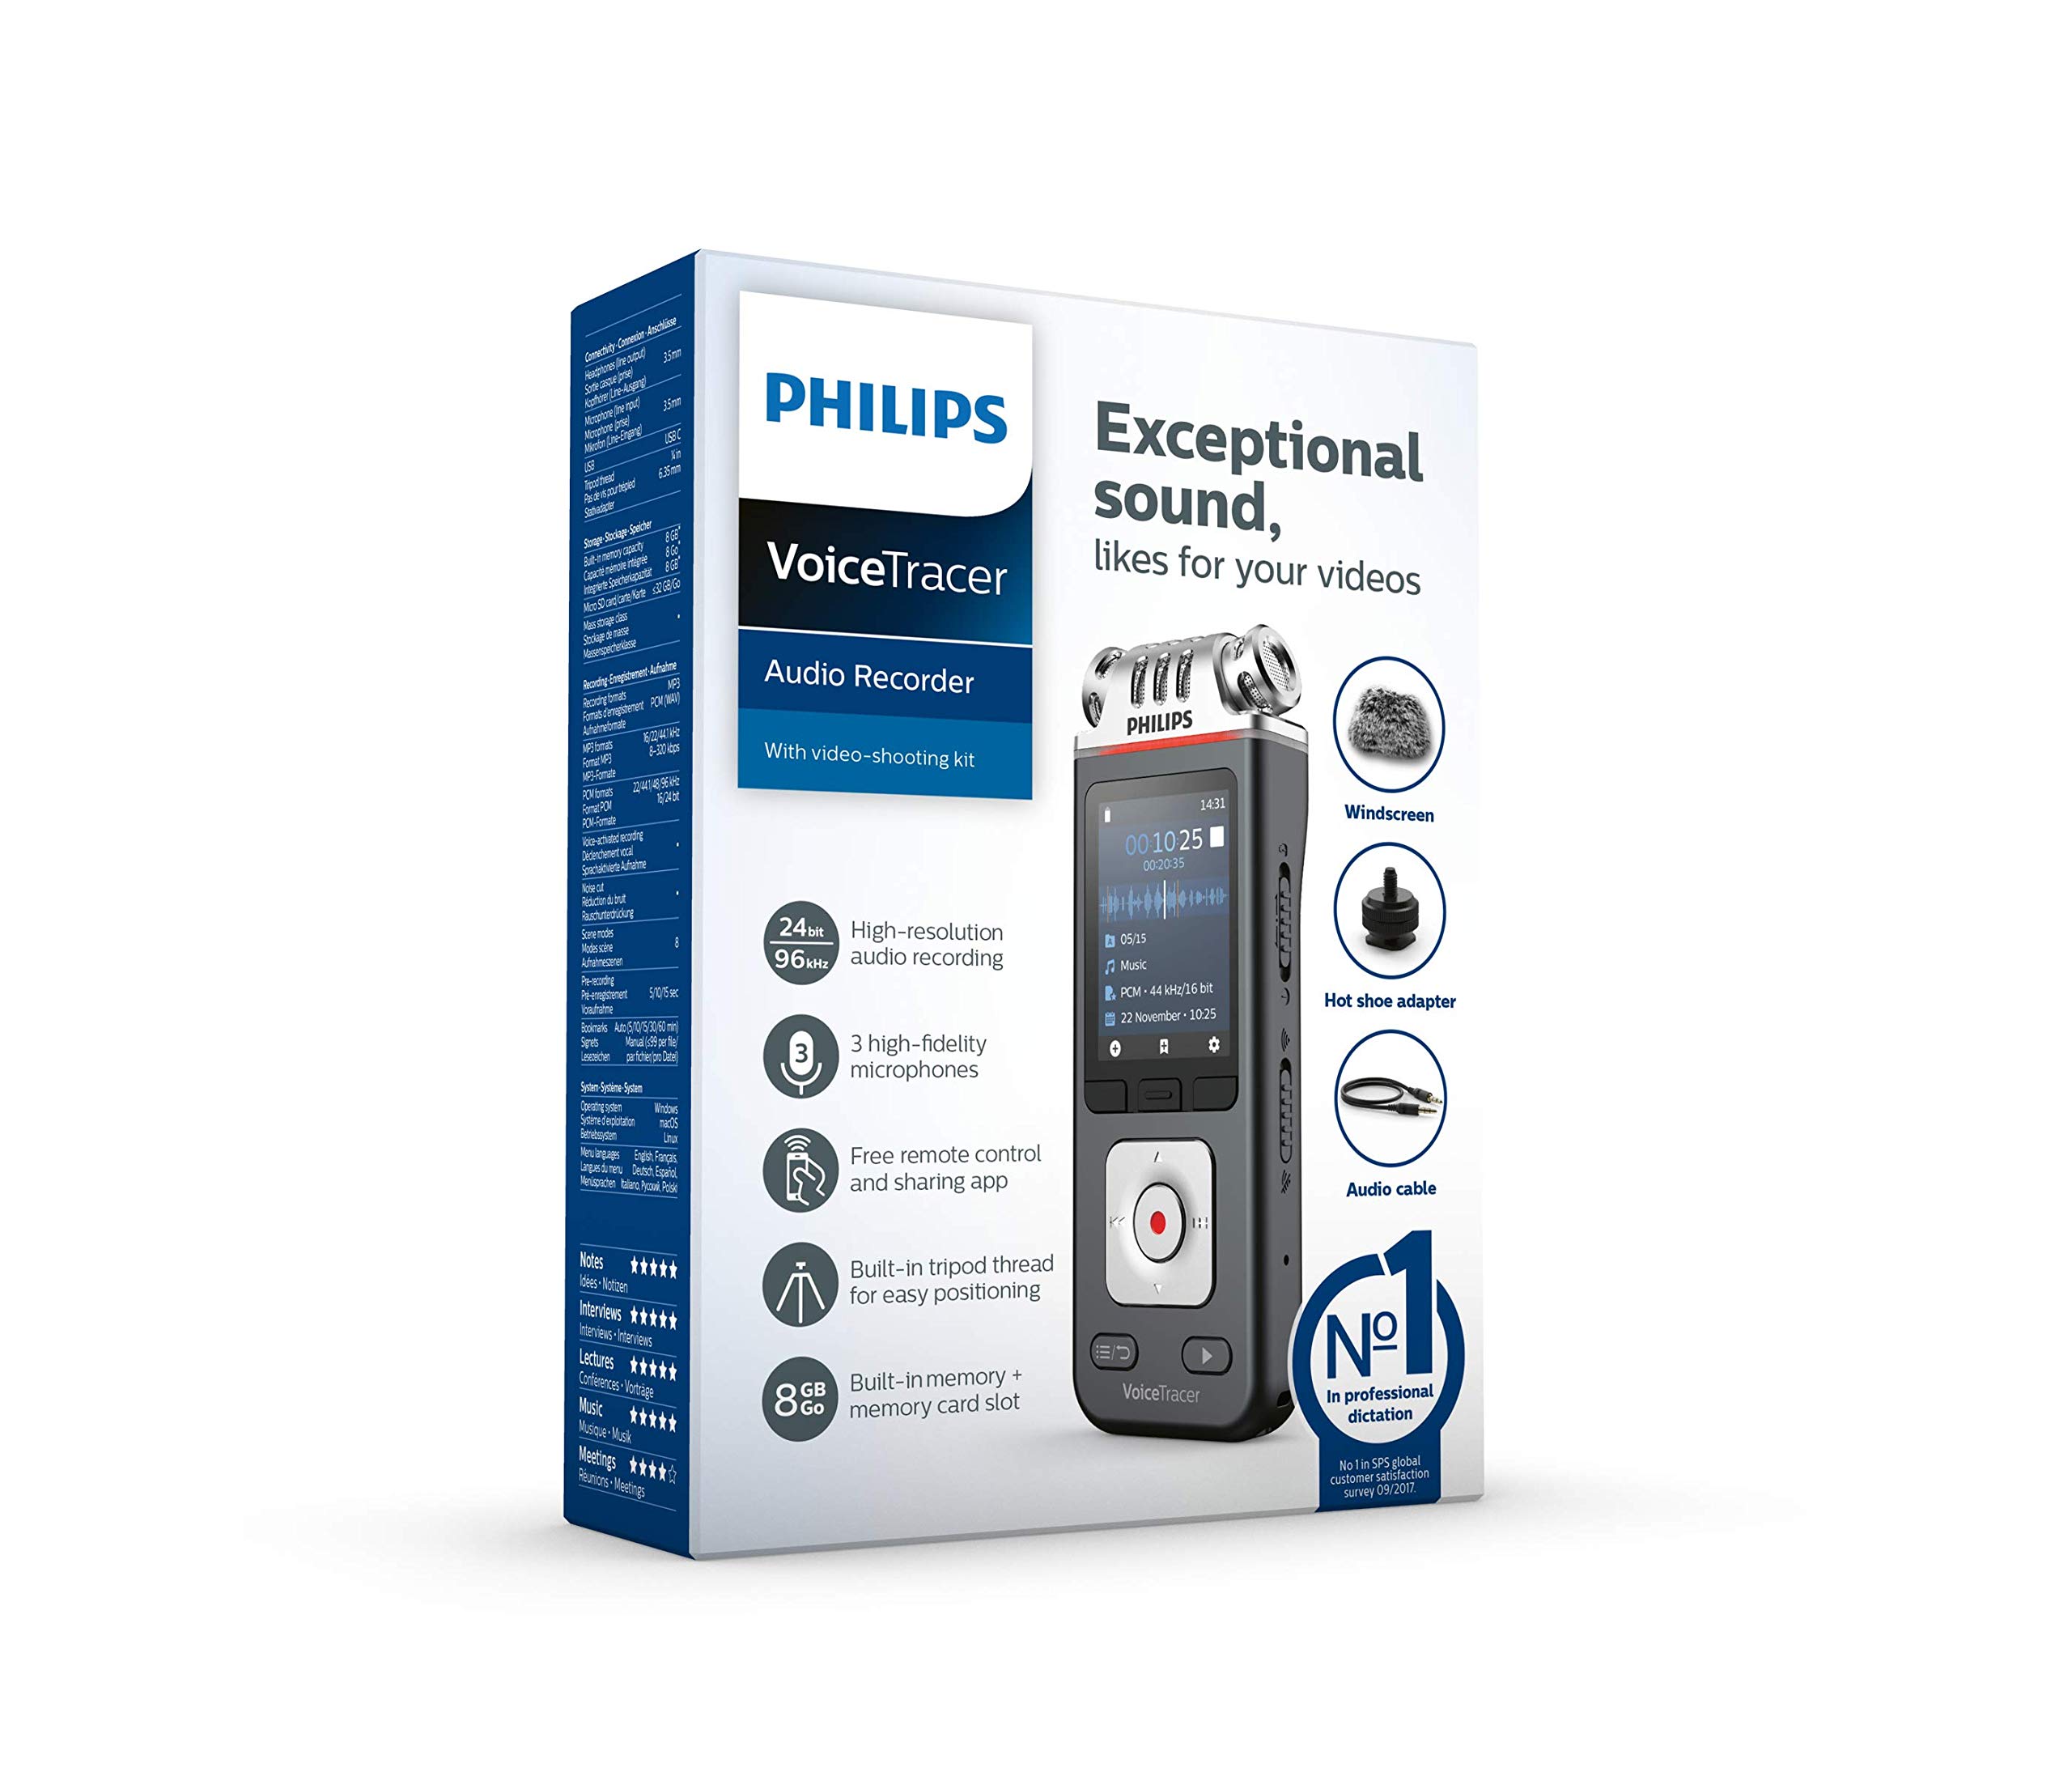 PHILIPS DVT7110 Voicetracer Digital